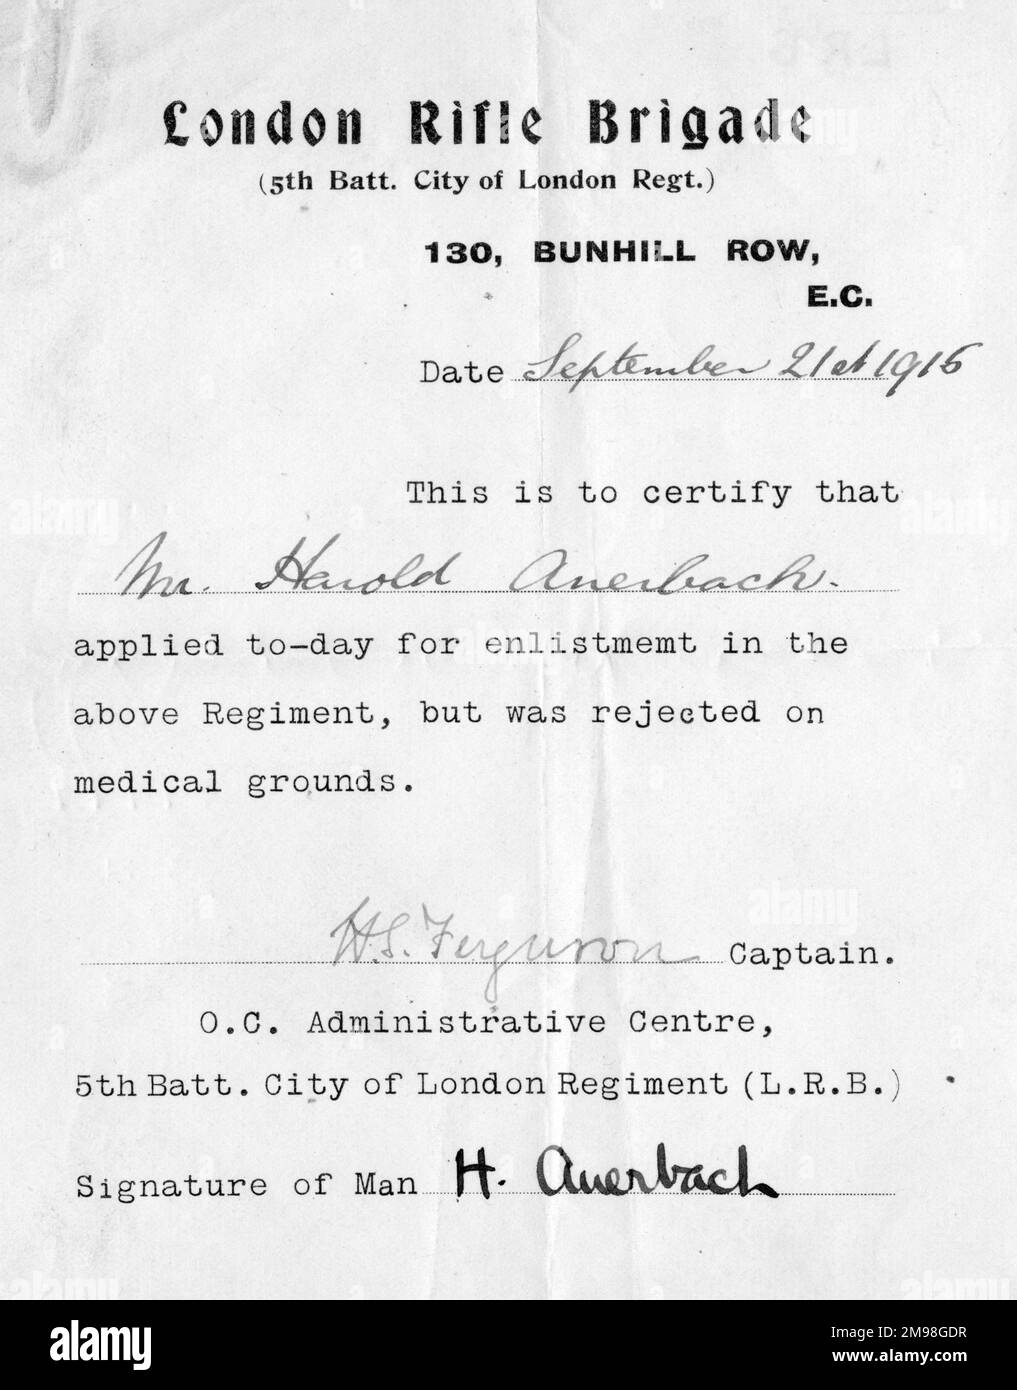 Lettre de confirmation déclarant Harold Auerbach (1897-1975) inapte au service militaire pour des raisons médicales, 21 septembre 1916. Il avait demandé l'enrôlement dans la Brigade des fusils à Canon de Londres. Banque D'Images